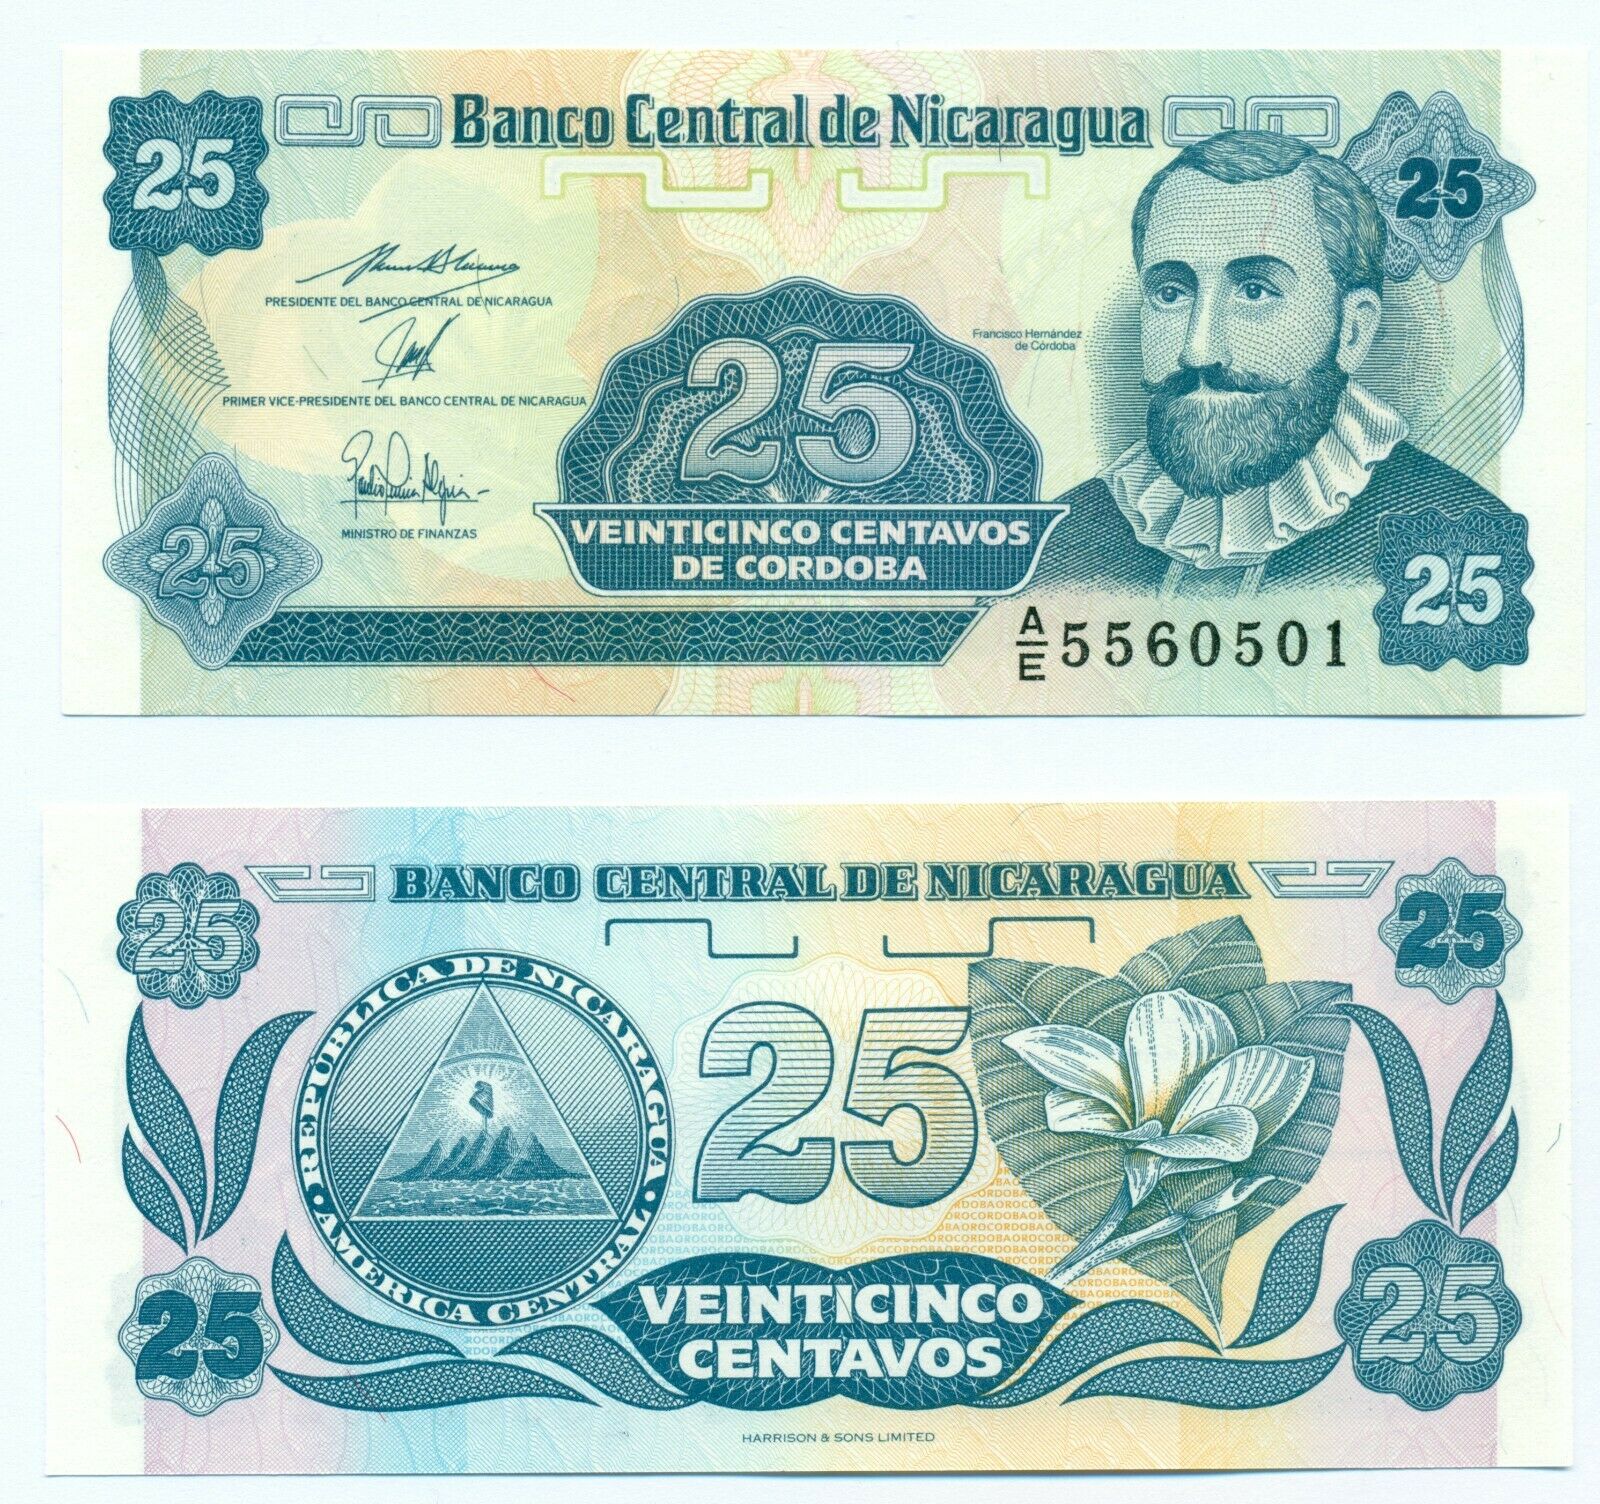 Tờ tiền châu Mỹ, 25 centavos Nicaragua mới cứng sưu tầm, tặng kèm túi nilon bảo quản